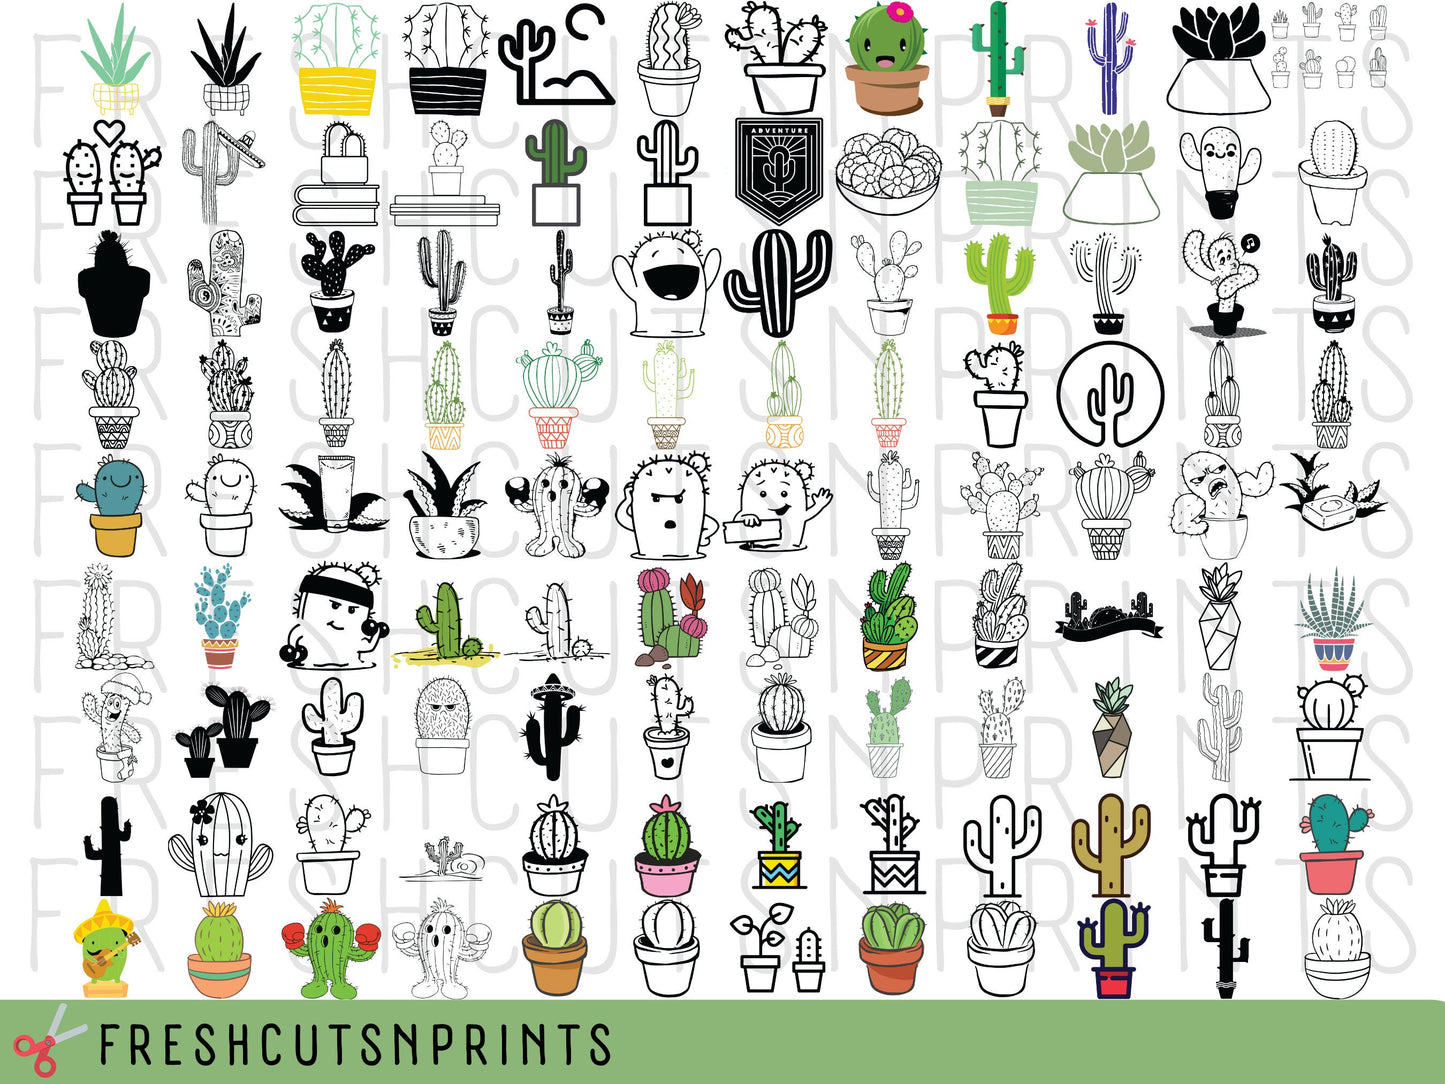 200+ Cactus SVG Bundle , Cactus Clipart, Cactus CutFile, Cactus Vector, Succulent SVG, House Plant svg, Potted Plant clipart, Cactus png